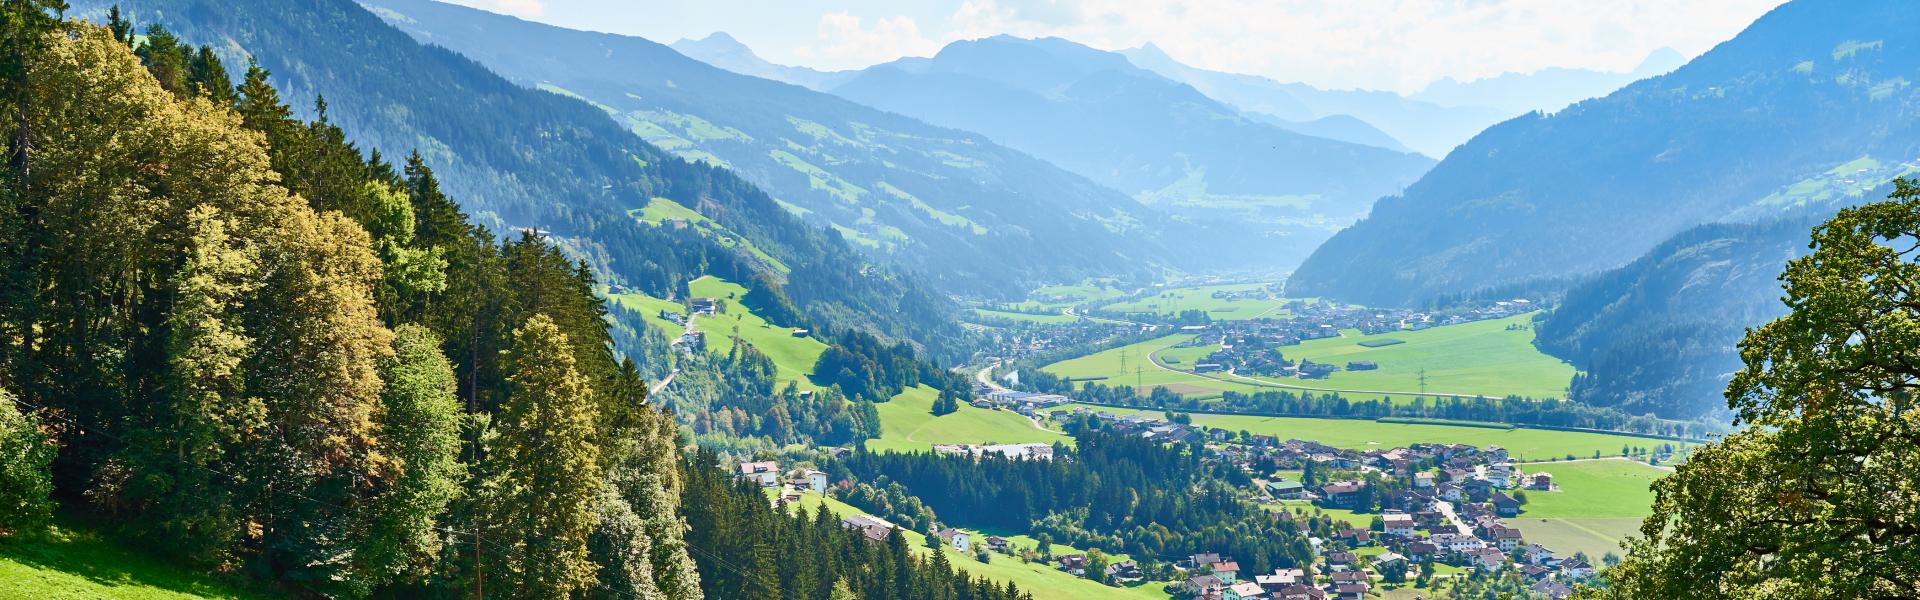 Ferienwohnungen & Ferienhäuser für Urlaub in Osttirol - Casamundo